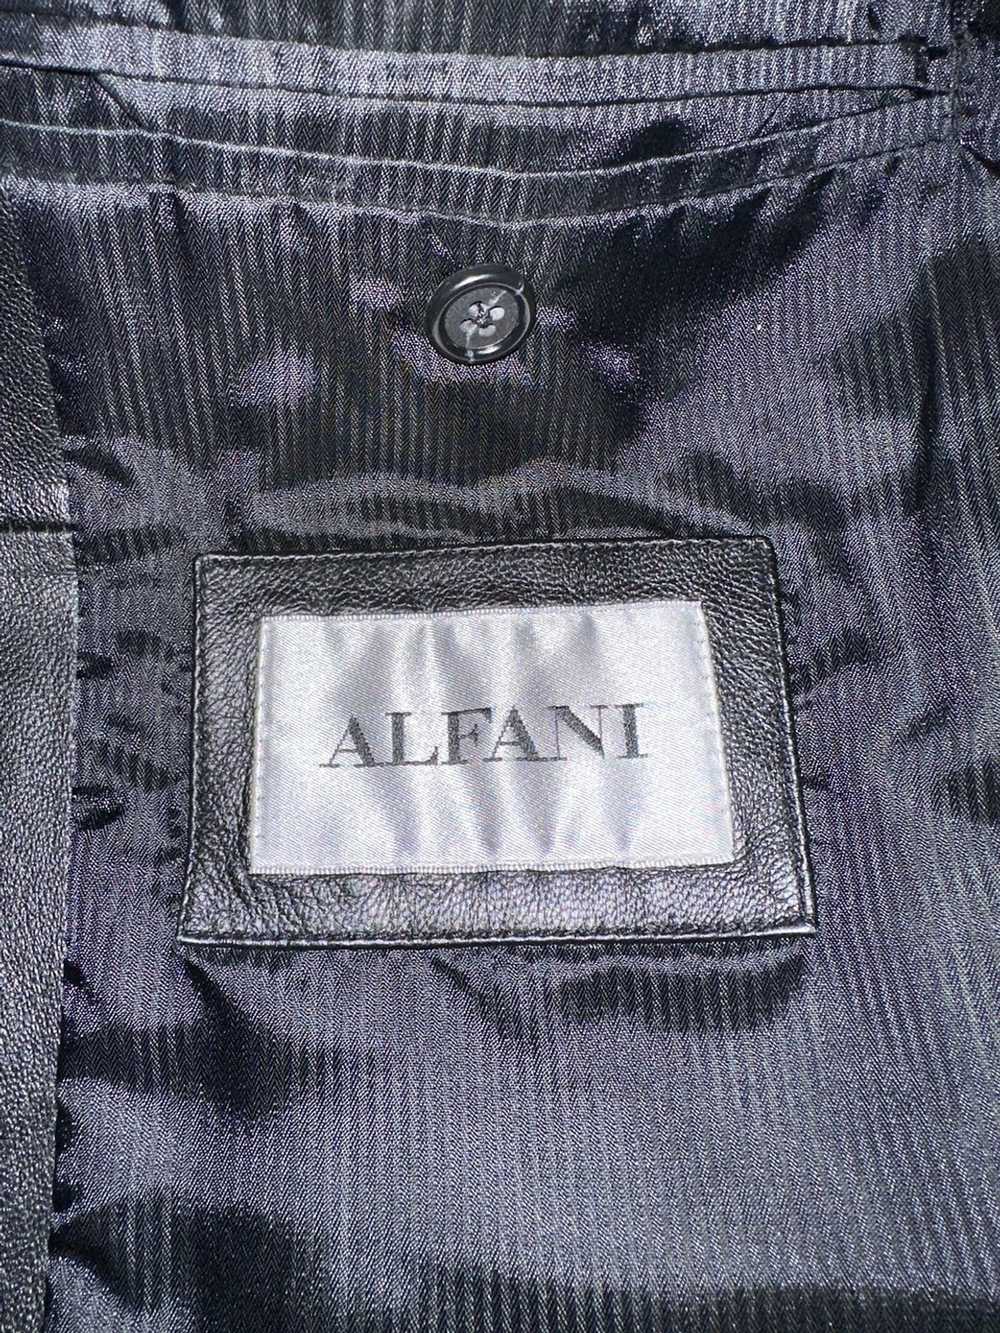 Alfani × Leather Jacket × Vintage Black Leather B… - image 3